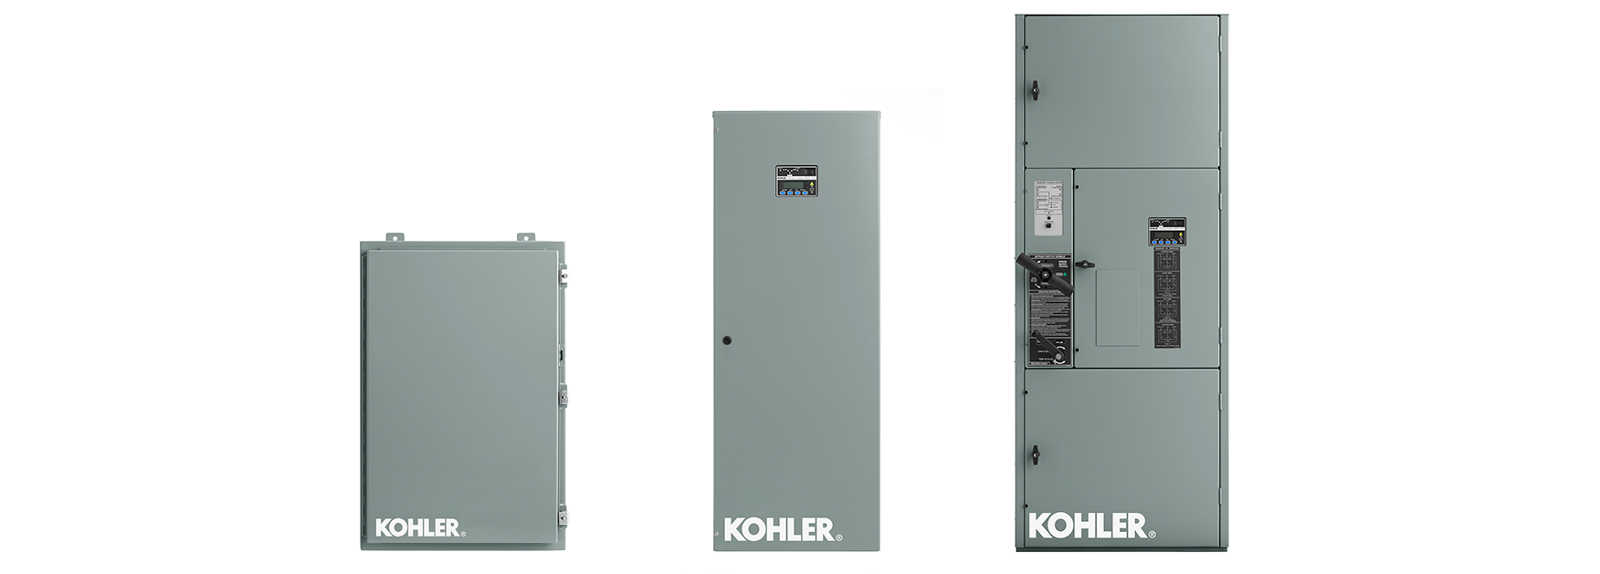 info-énergie – Drumco Energie – Fier Distributeur des génératrices Kohler®